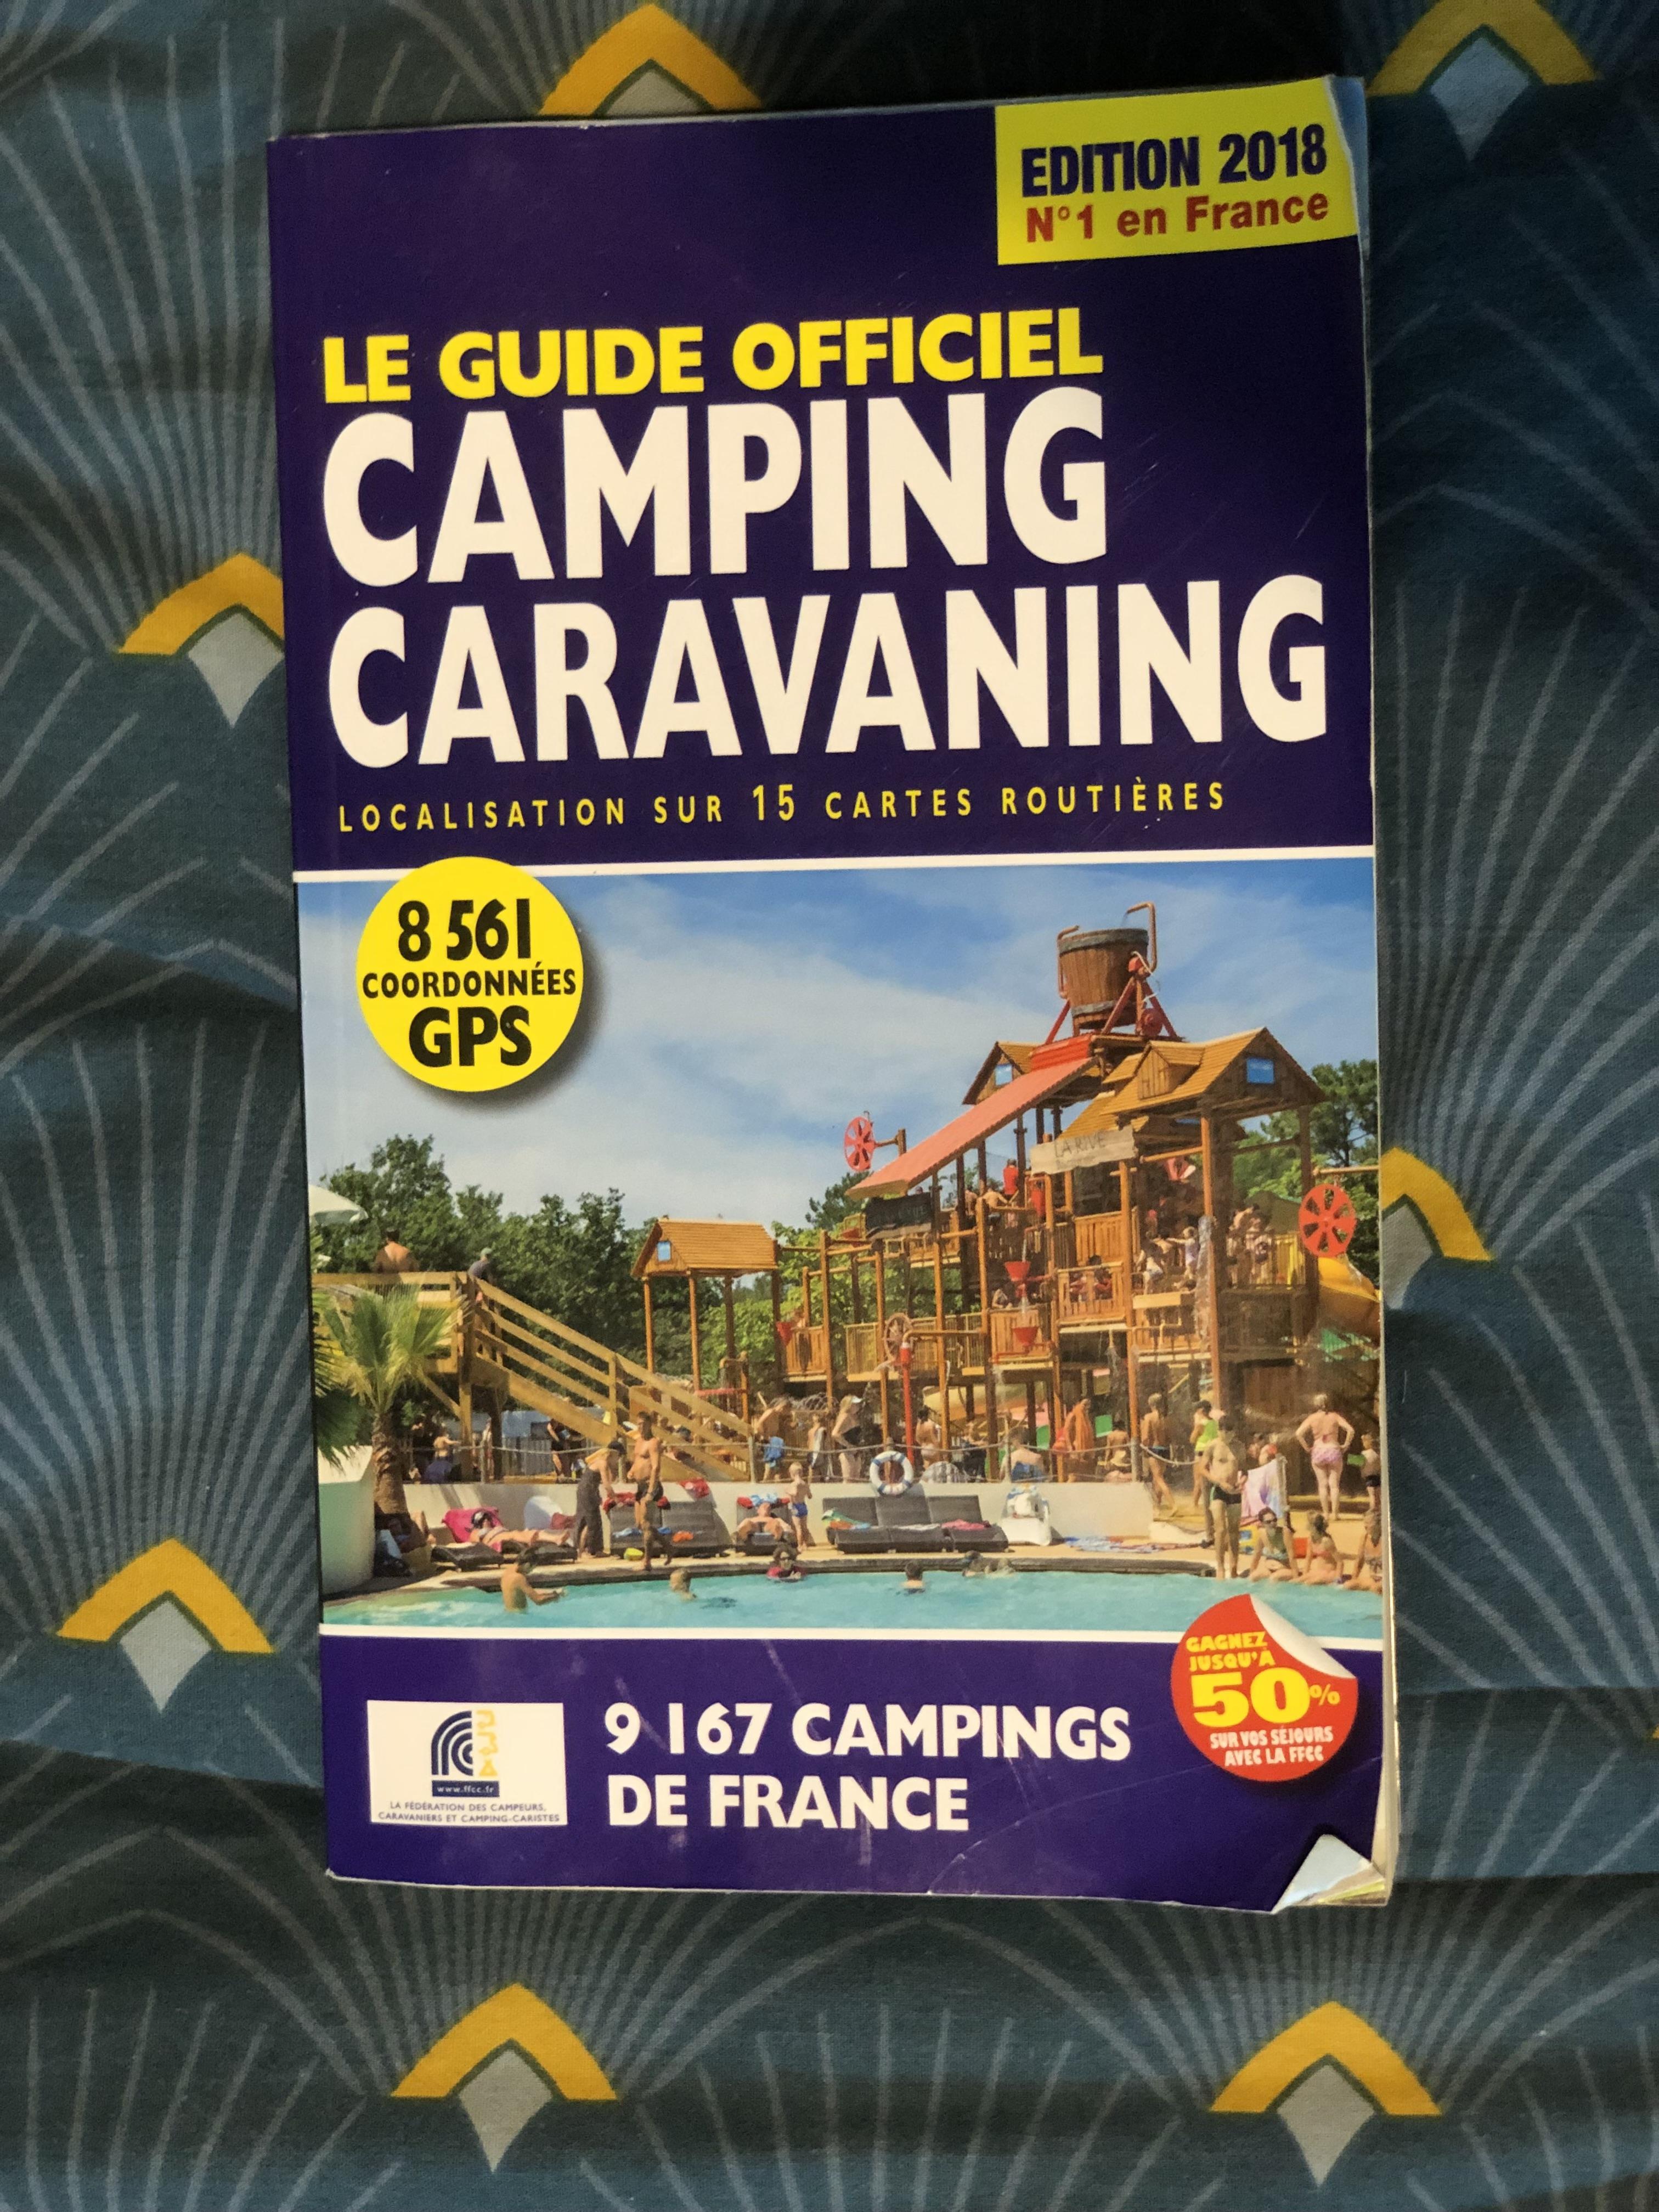 troc de troc guide du camping caravaning image 0